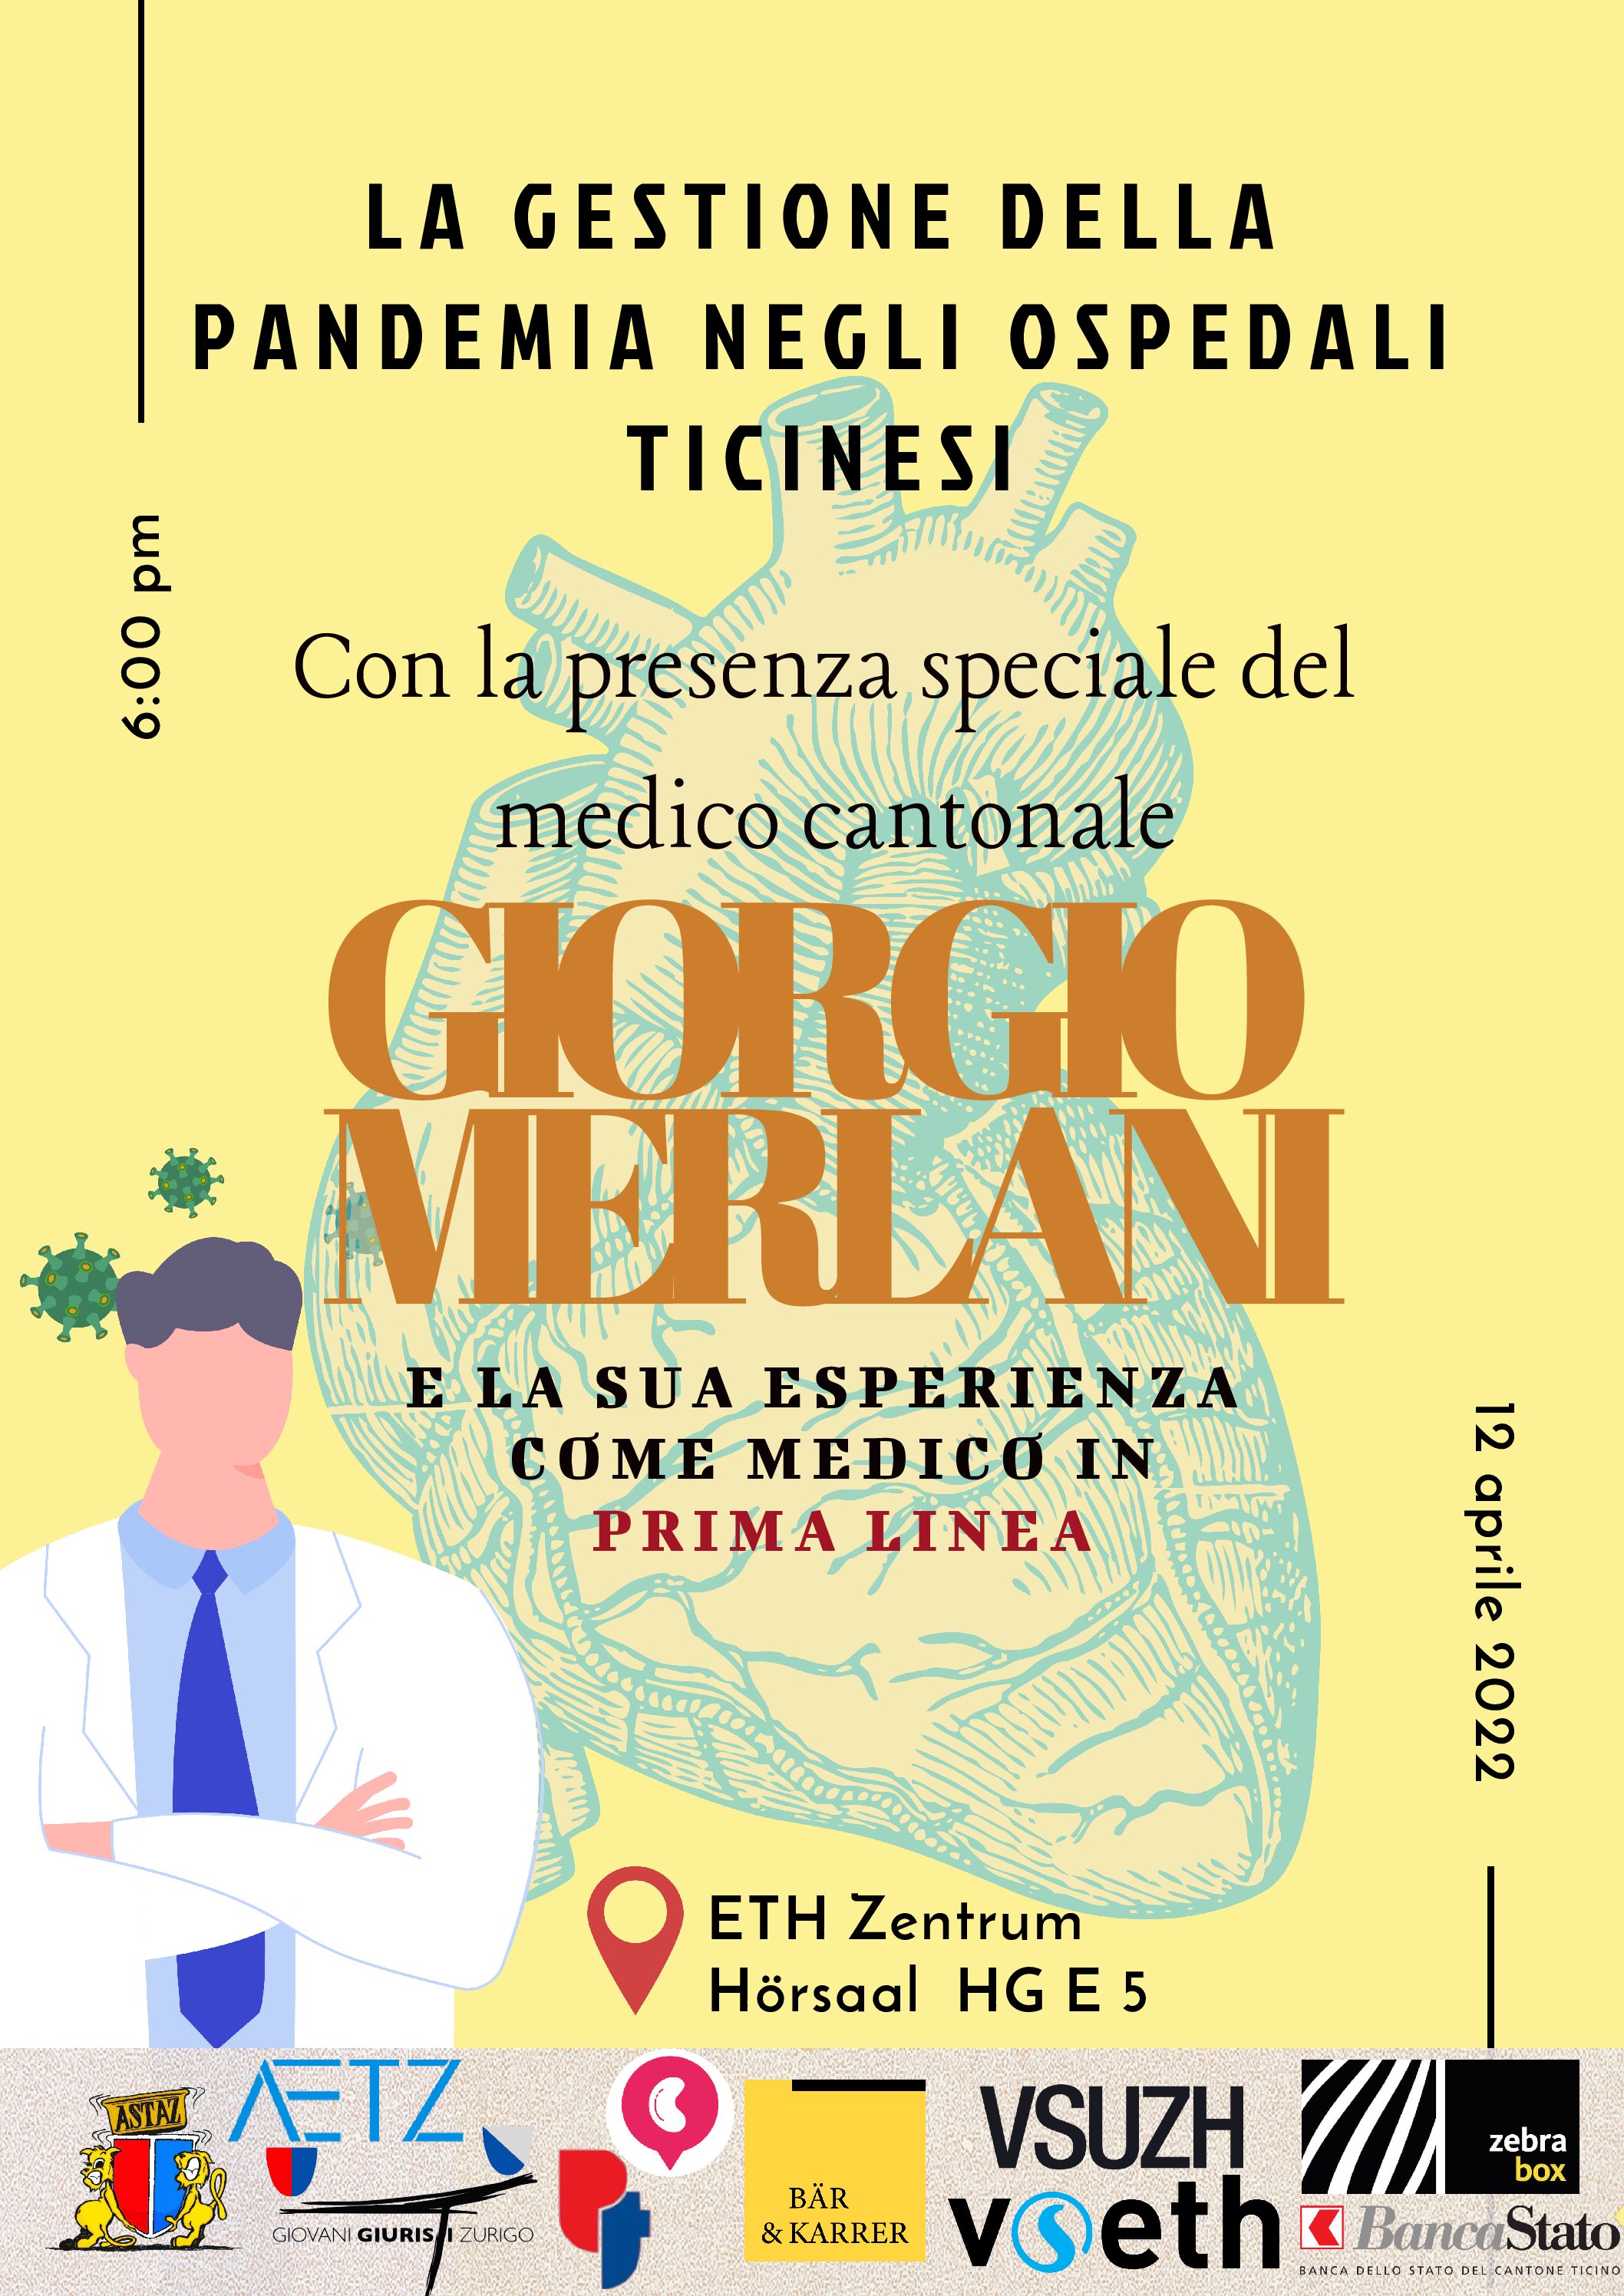 Apertura delle iscrizioni per la conferenza “la gestione della pandemia negli ospedali ticinesi” con Giorgio Merlani